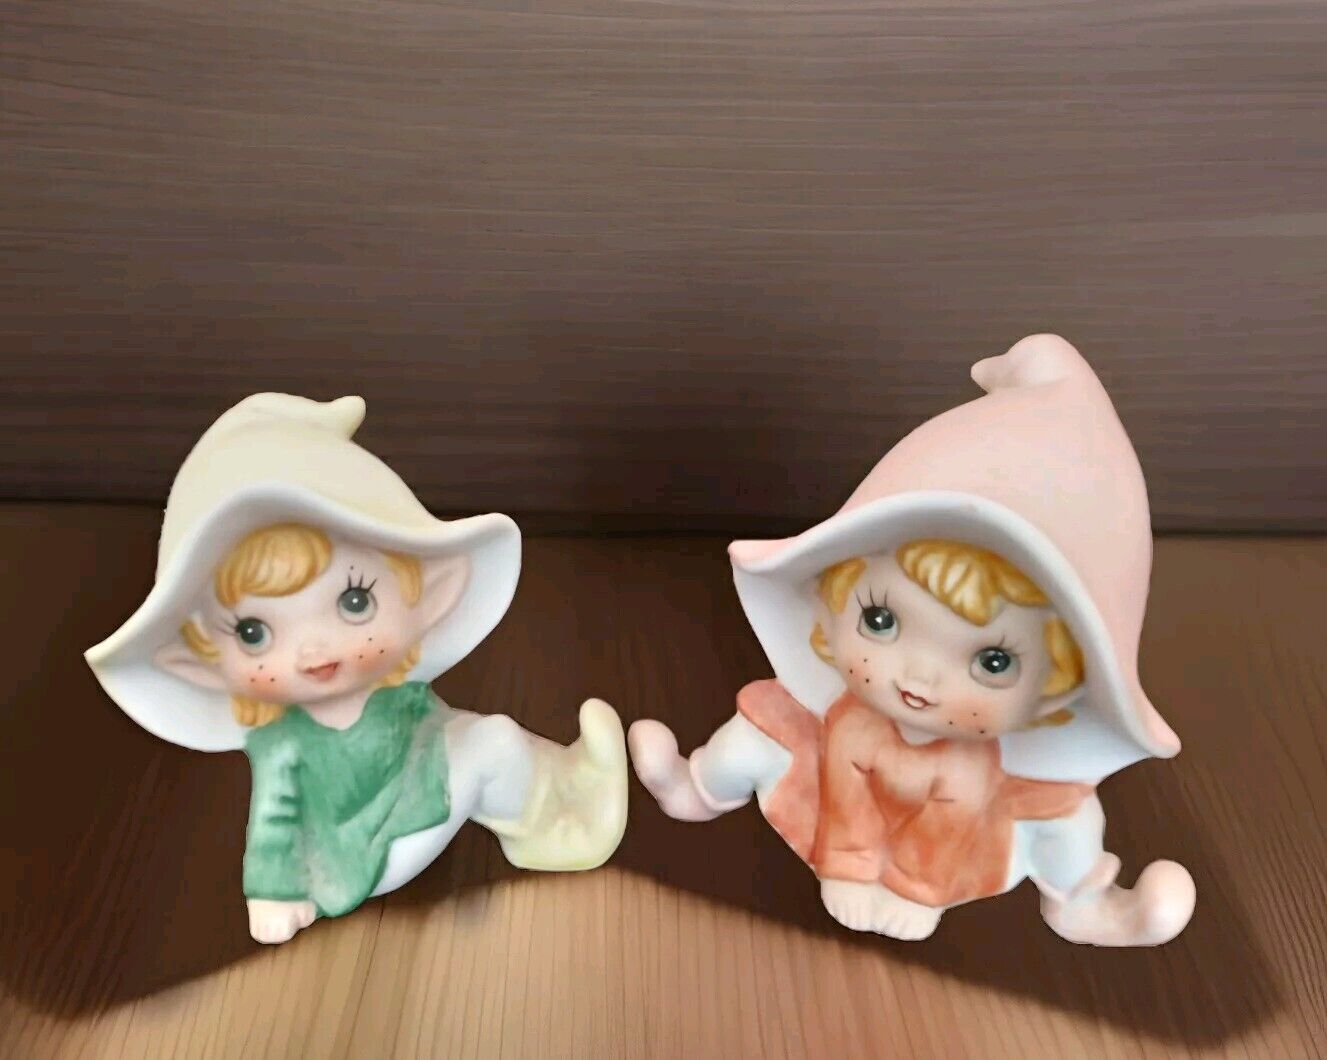 2 Vintage HOMCO Pixie Elf Fairy Figurine #5213 Orange and Green